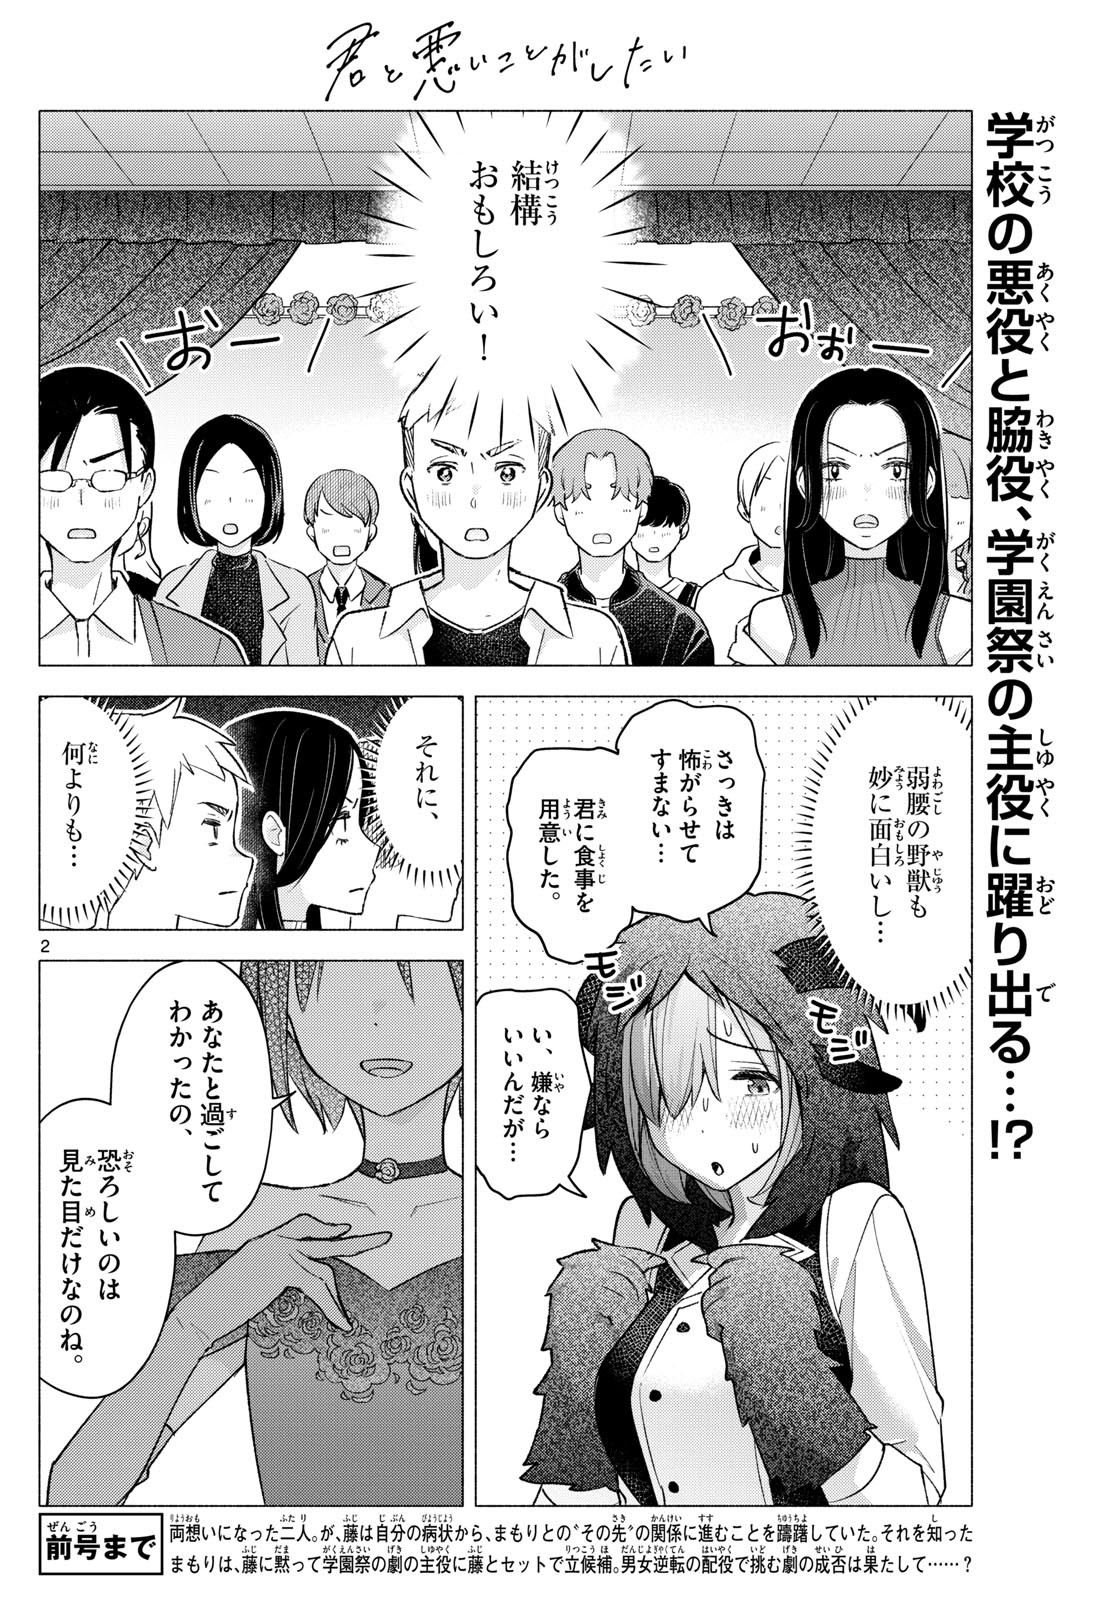 Kimi to Warui Koto ga Shitai - Chapter 064 - Page 2